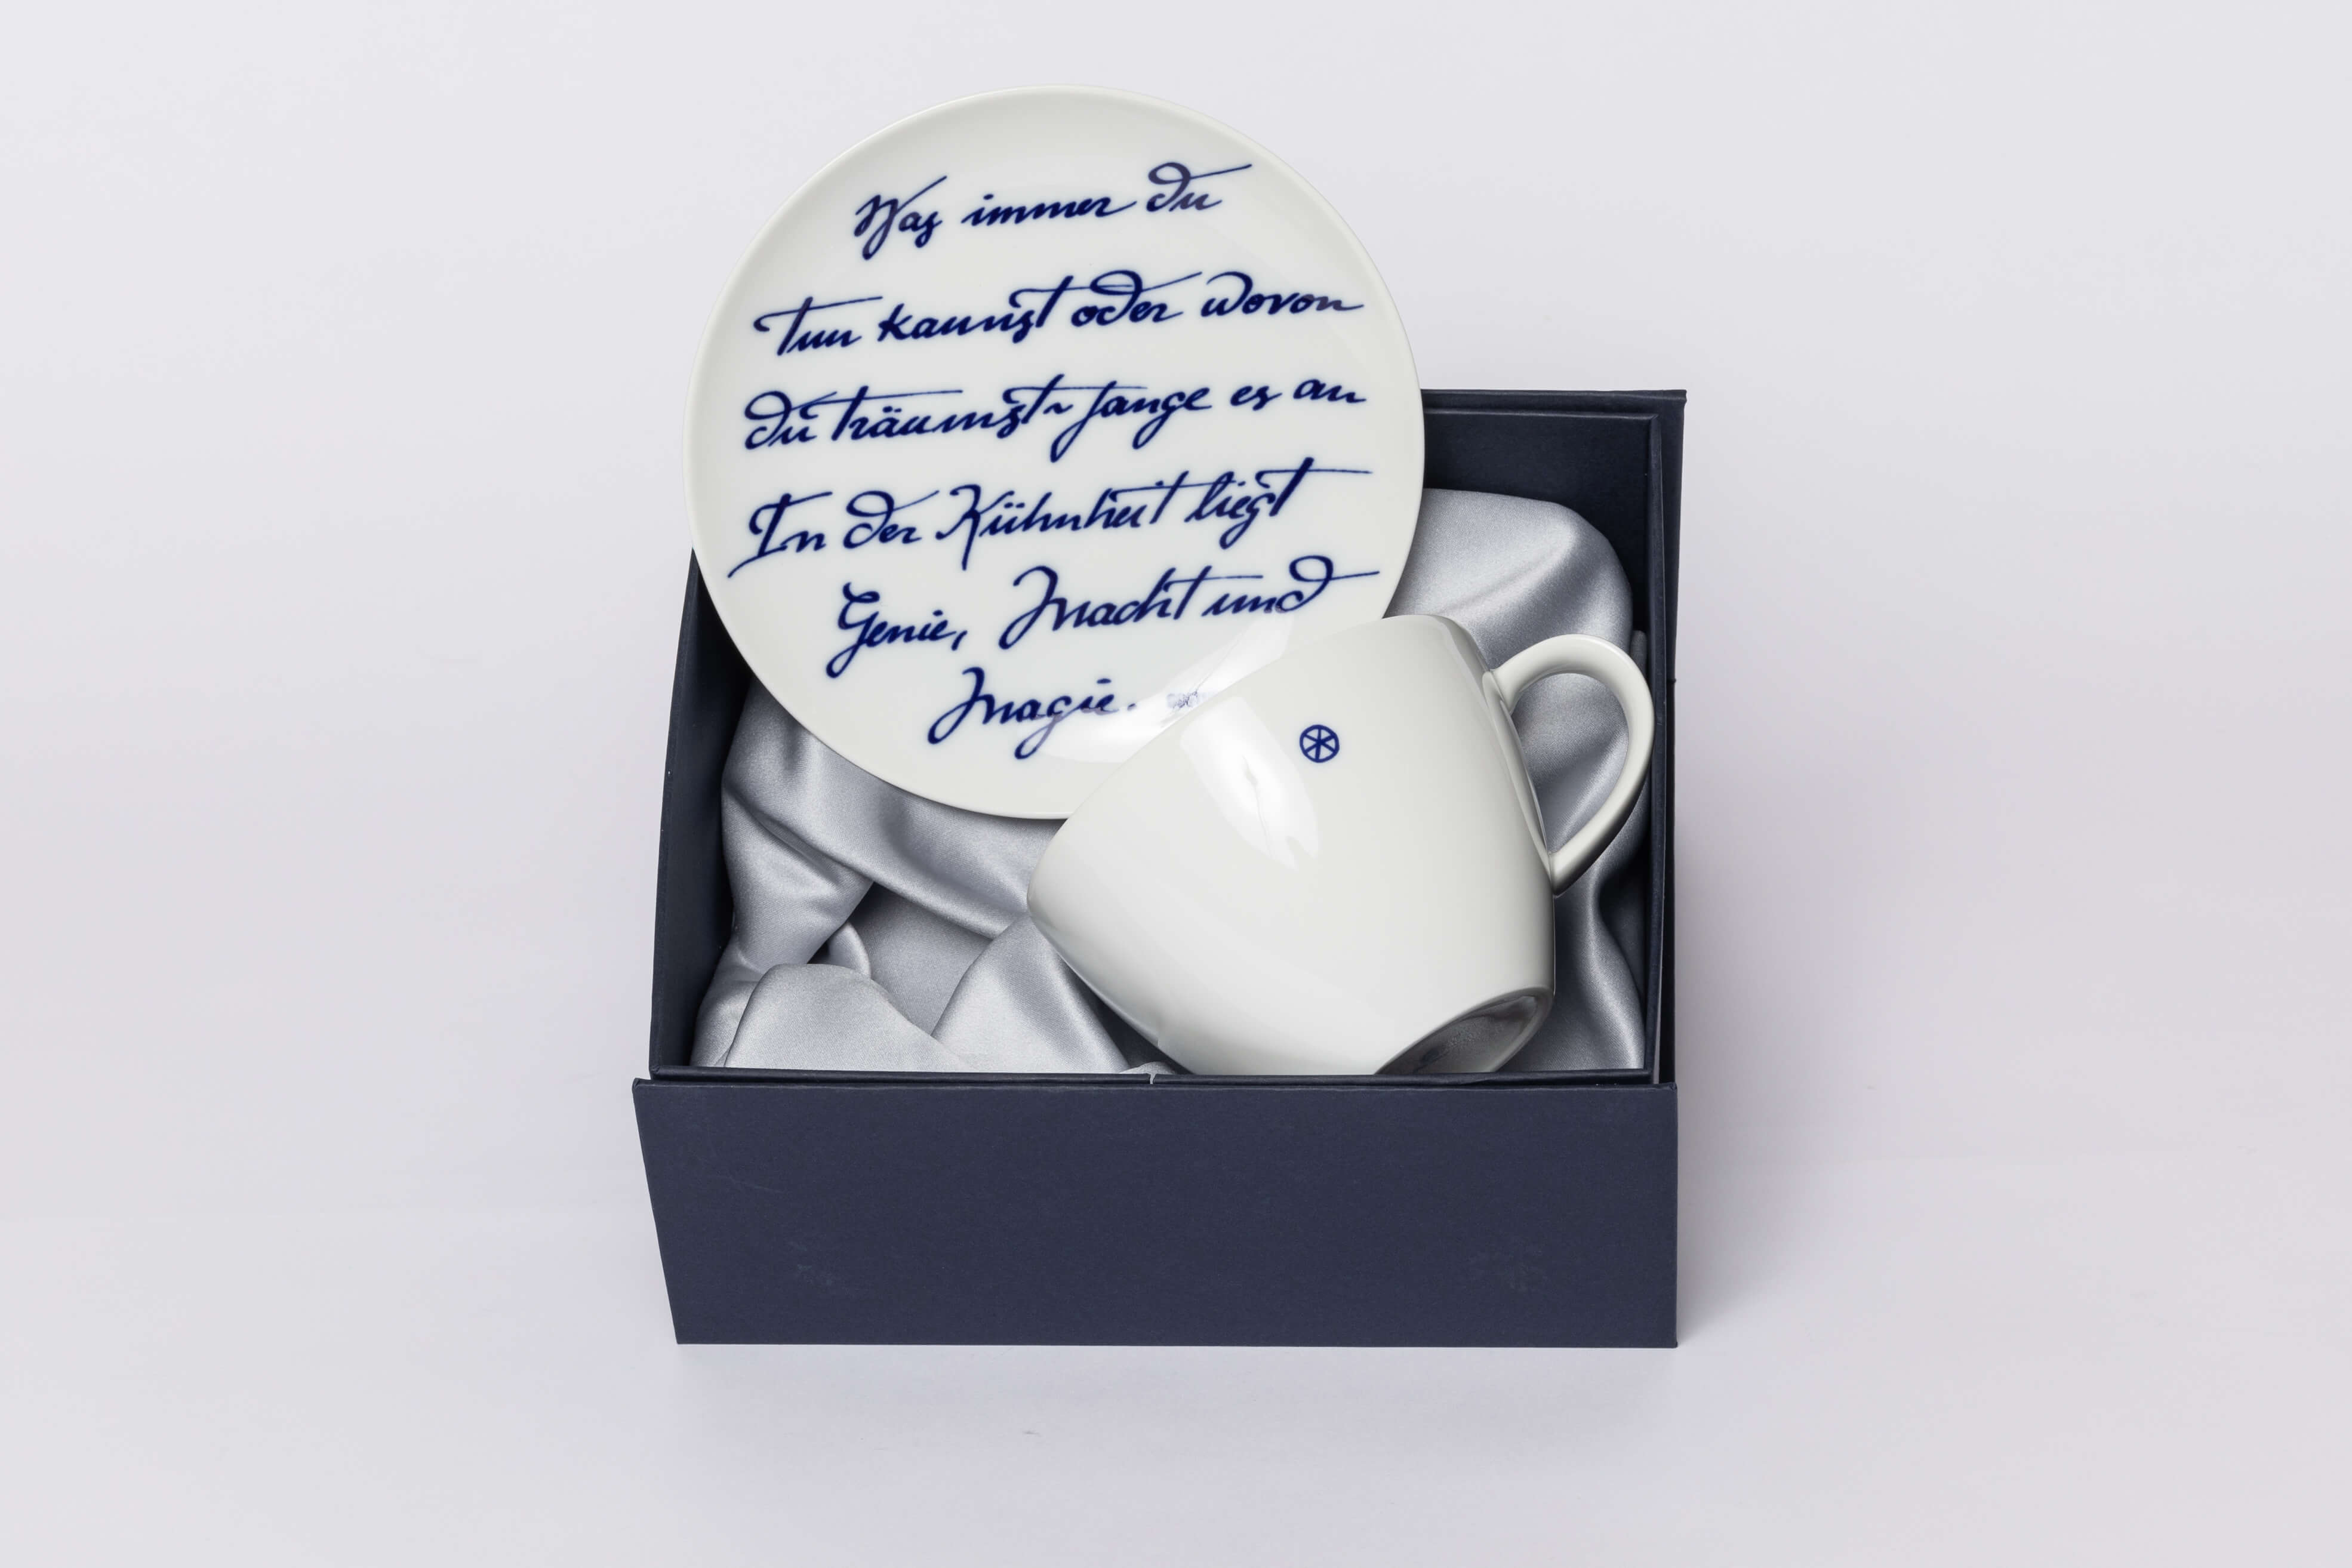 德國赫斯特瓷器-歌德拿鐵杯盤組圖片